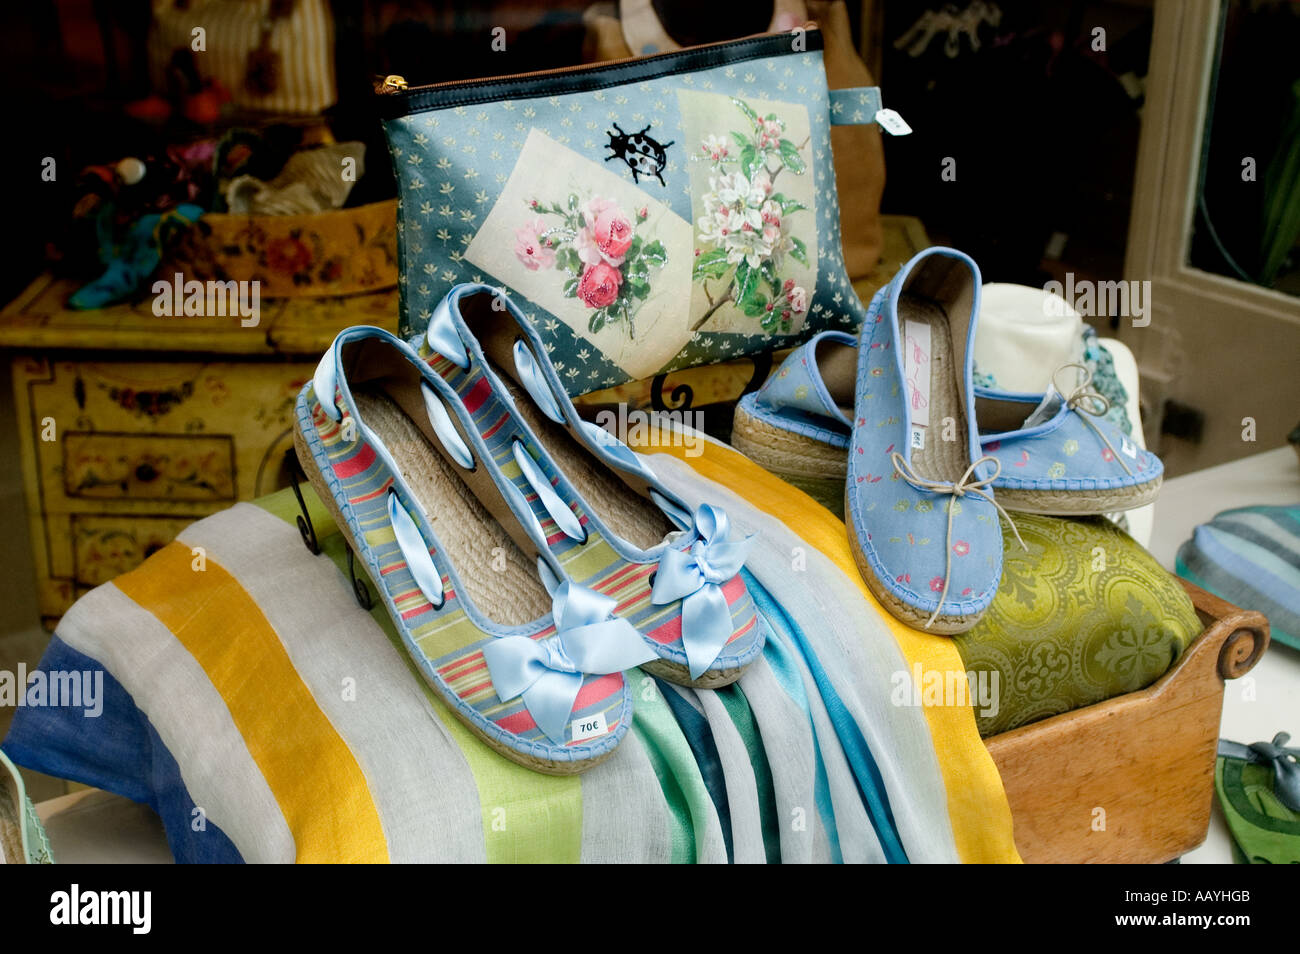 La Place des Vosges Marais Paris France chaussures Photo Stock - Alamy